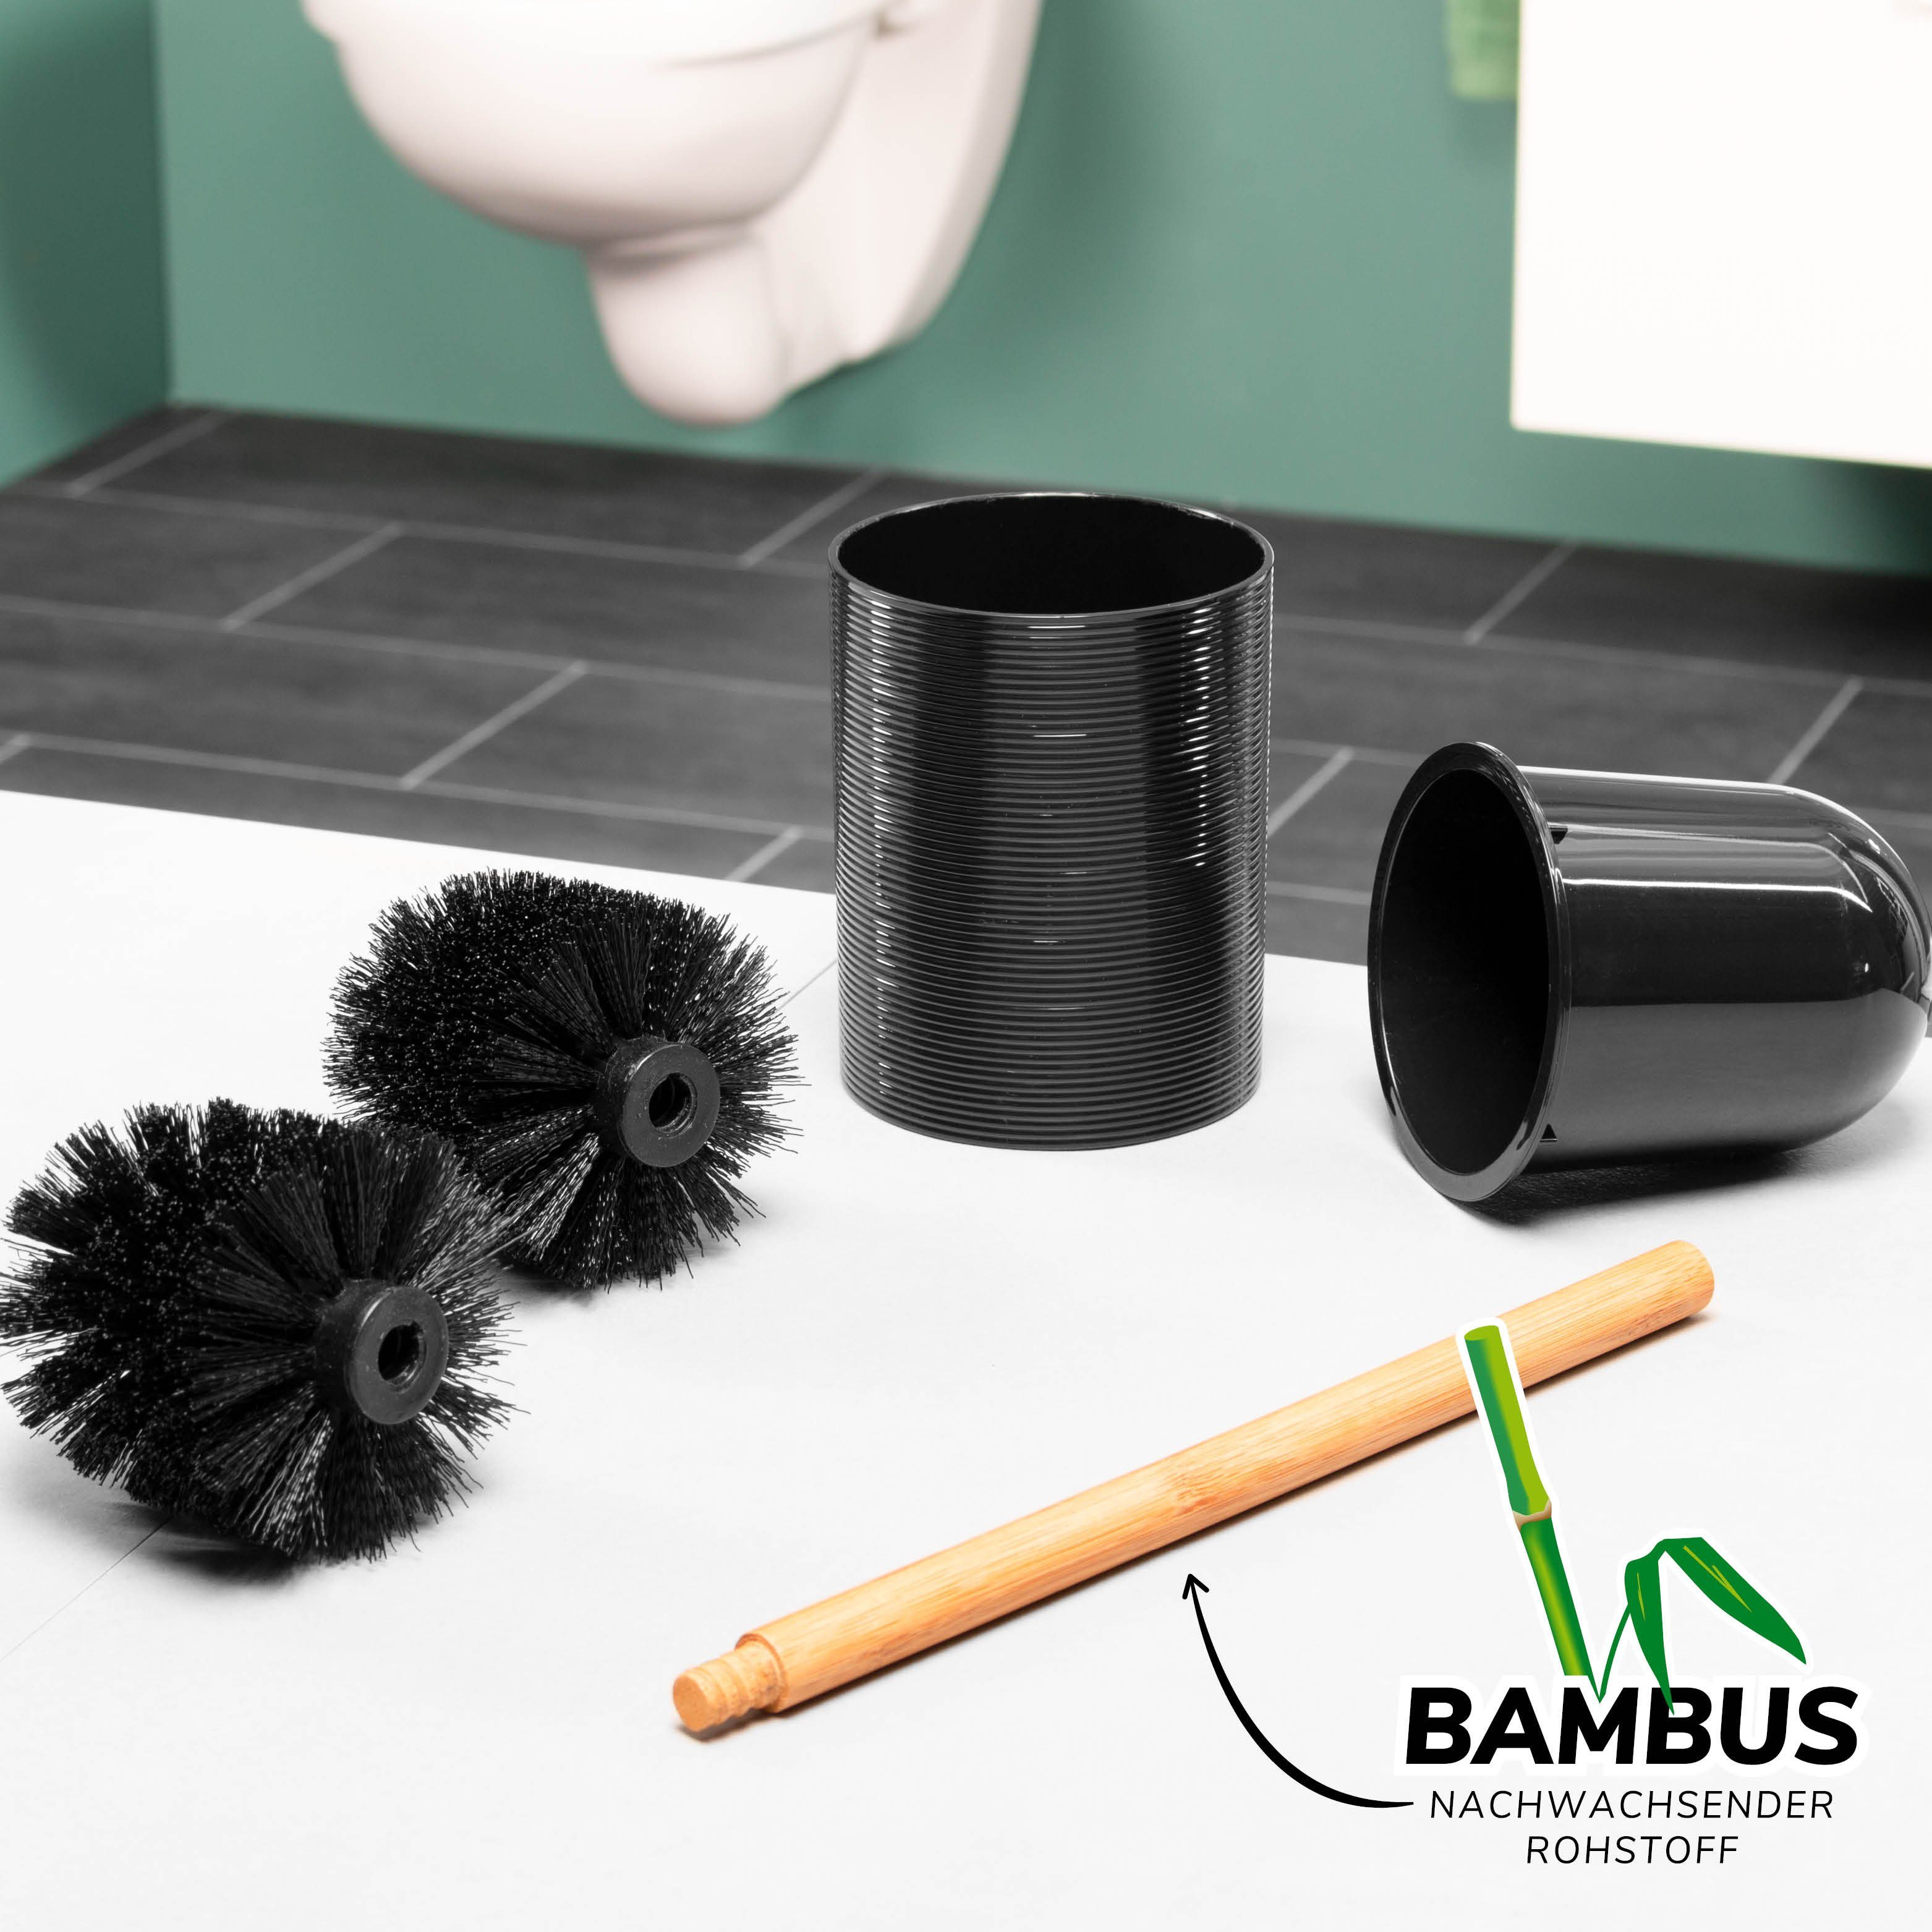 Kunststoff, Set) aus bremermann WC-Reinigungsbürste und SEGNO WC-Bürste bremermann (kein Segno, WC-Garnitur, Bambus